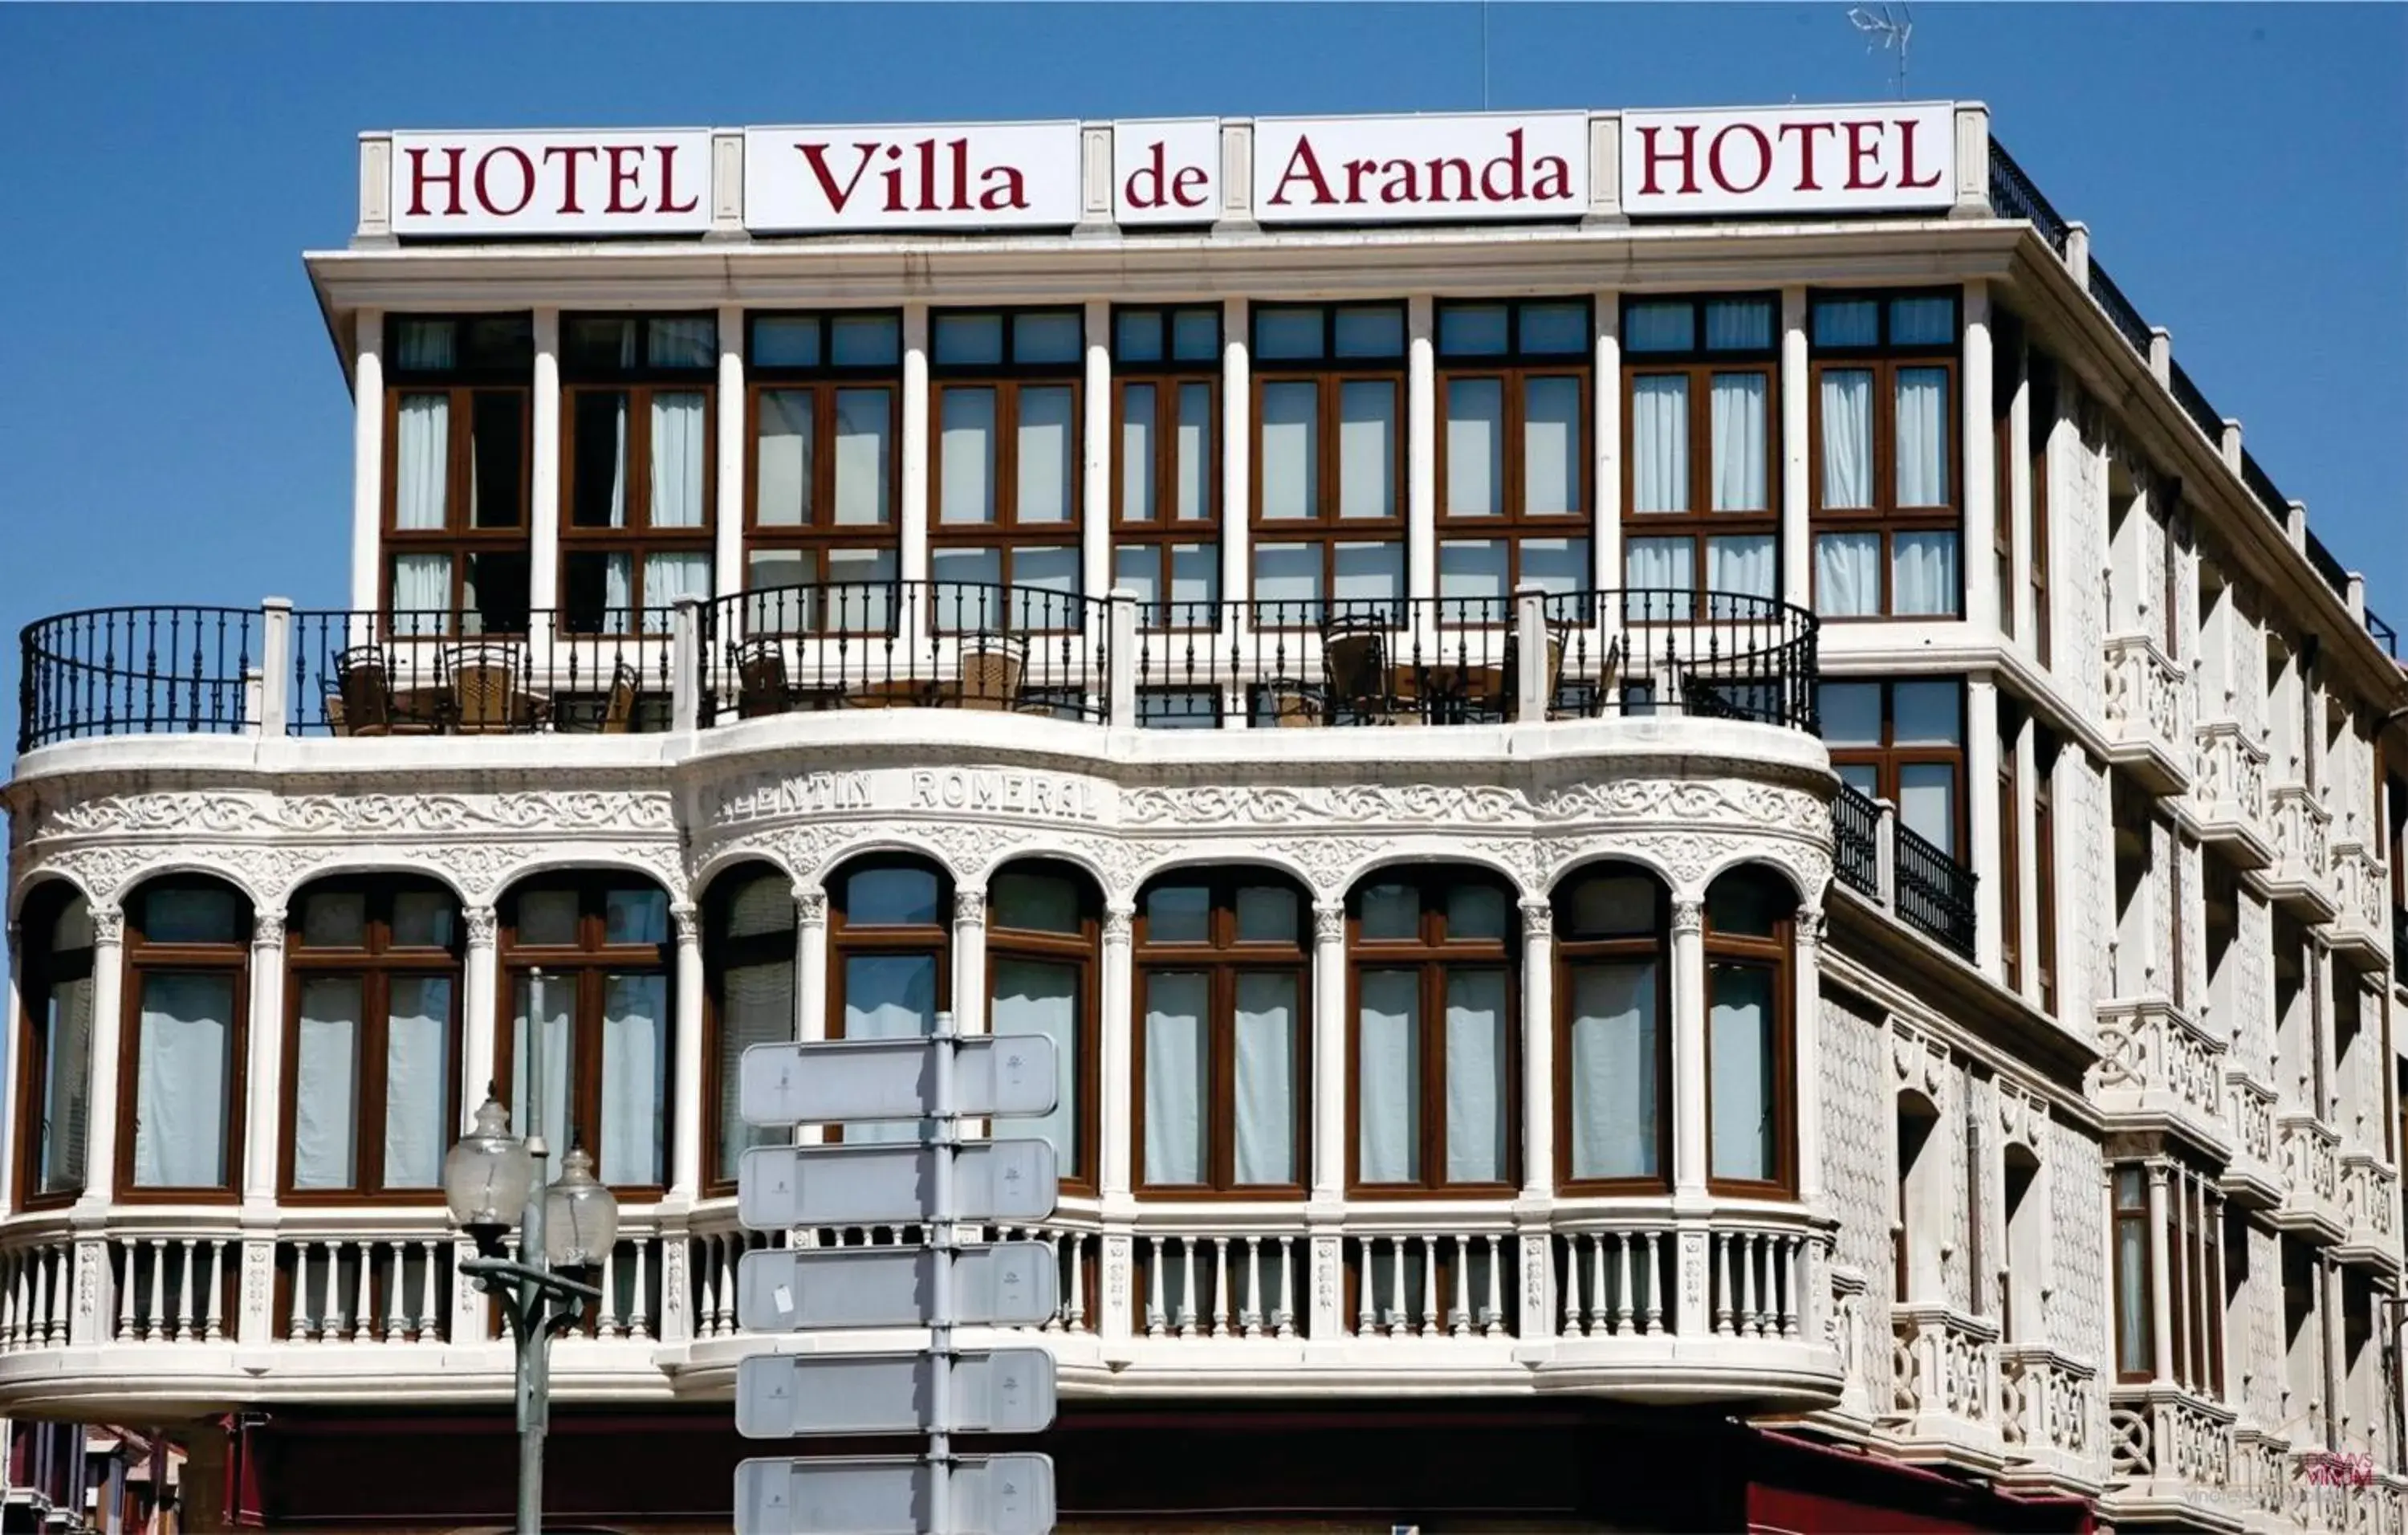 Facade/entrance, Property Building in Hotel Villa de Aranda